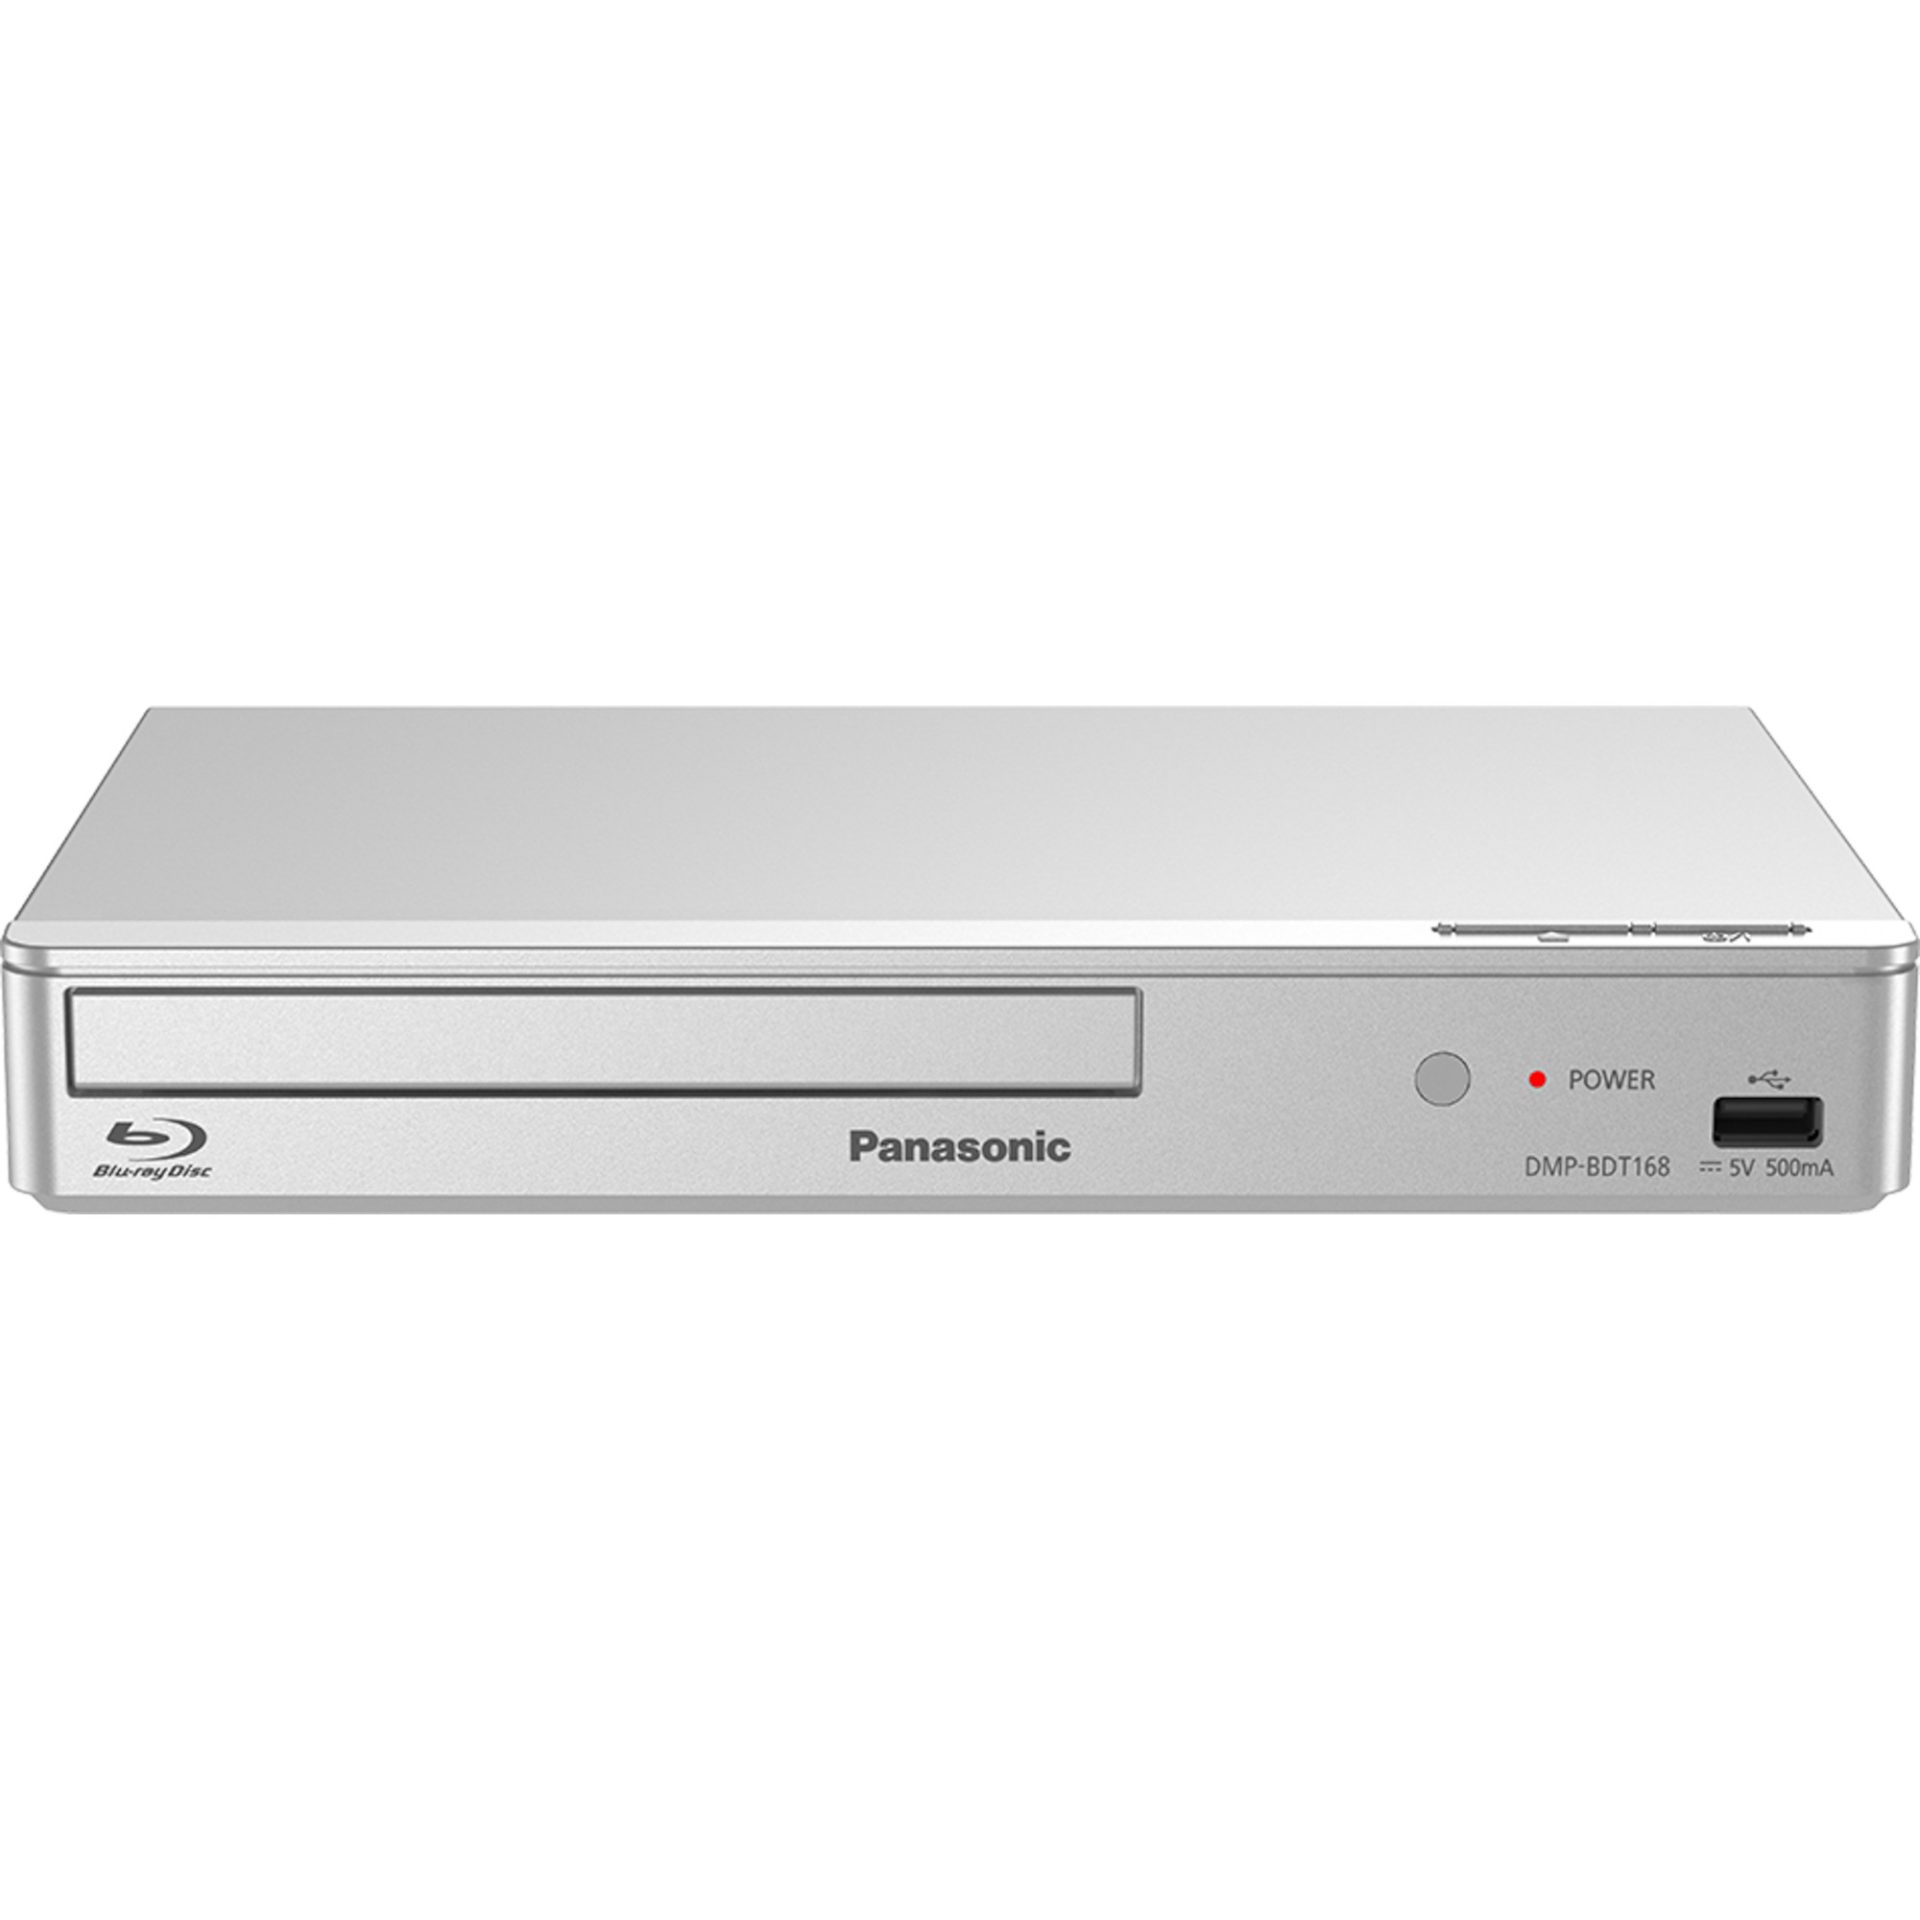 Panasonic DMP-BDT168 blu-ray přehrávač (podporované formáty: Xvid/MKV/MP4/FLAC/MP3/AAC/ALAC/DSD, webové aplikace, USB, HDMI), stříbrná